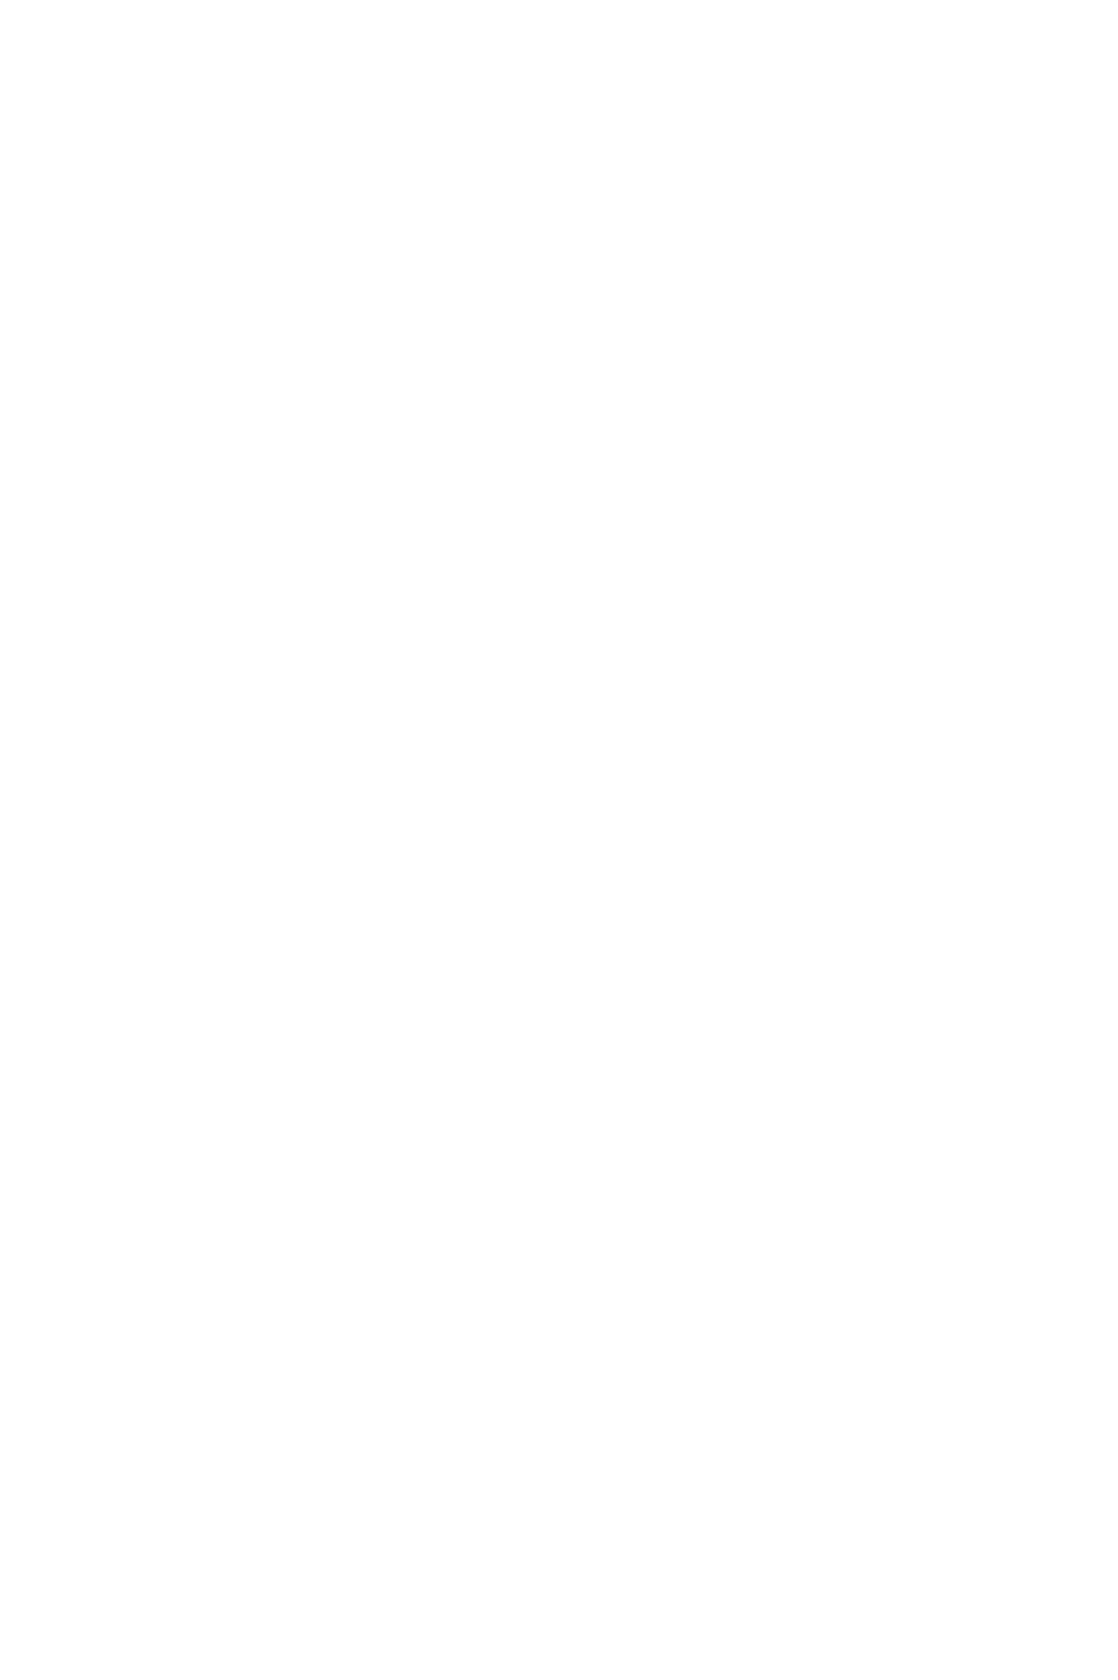 Пальто женское расклешенное демисезонное с английским воротником большого размера пошить на заказ по индивидуальным меркам со скидкой и доставкой по России, в Казахстан и Беларусь